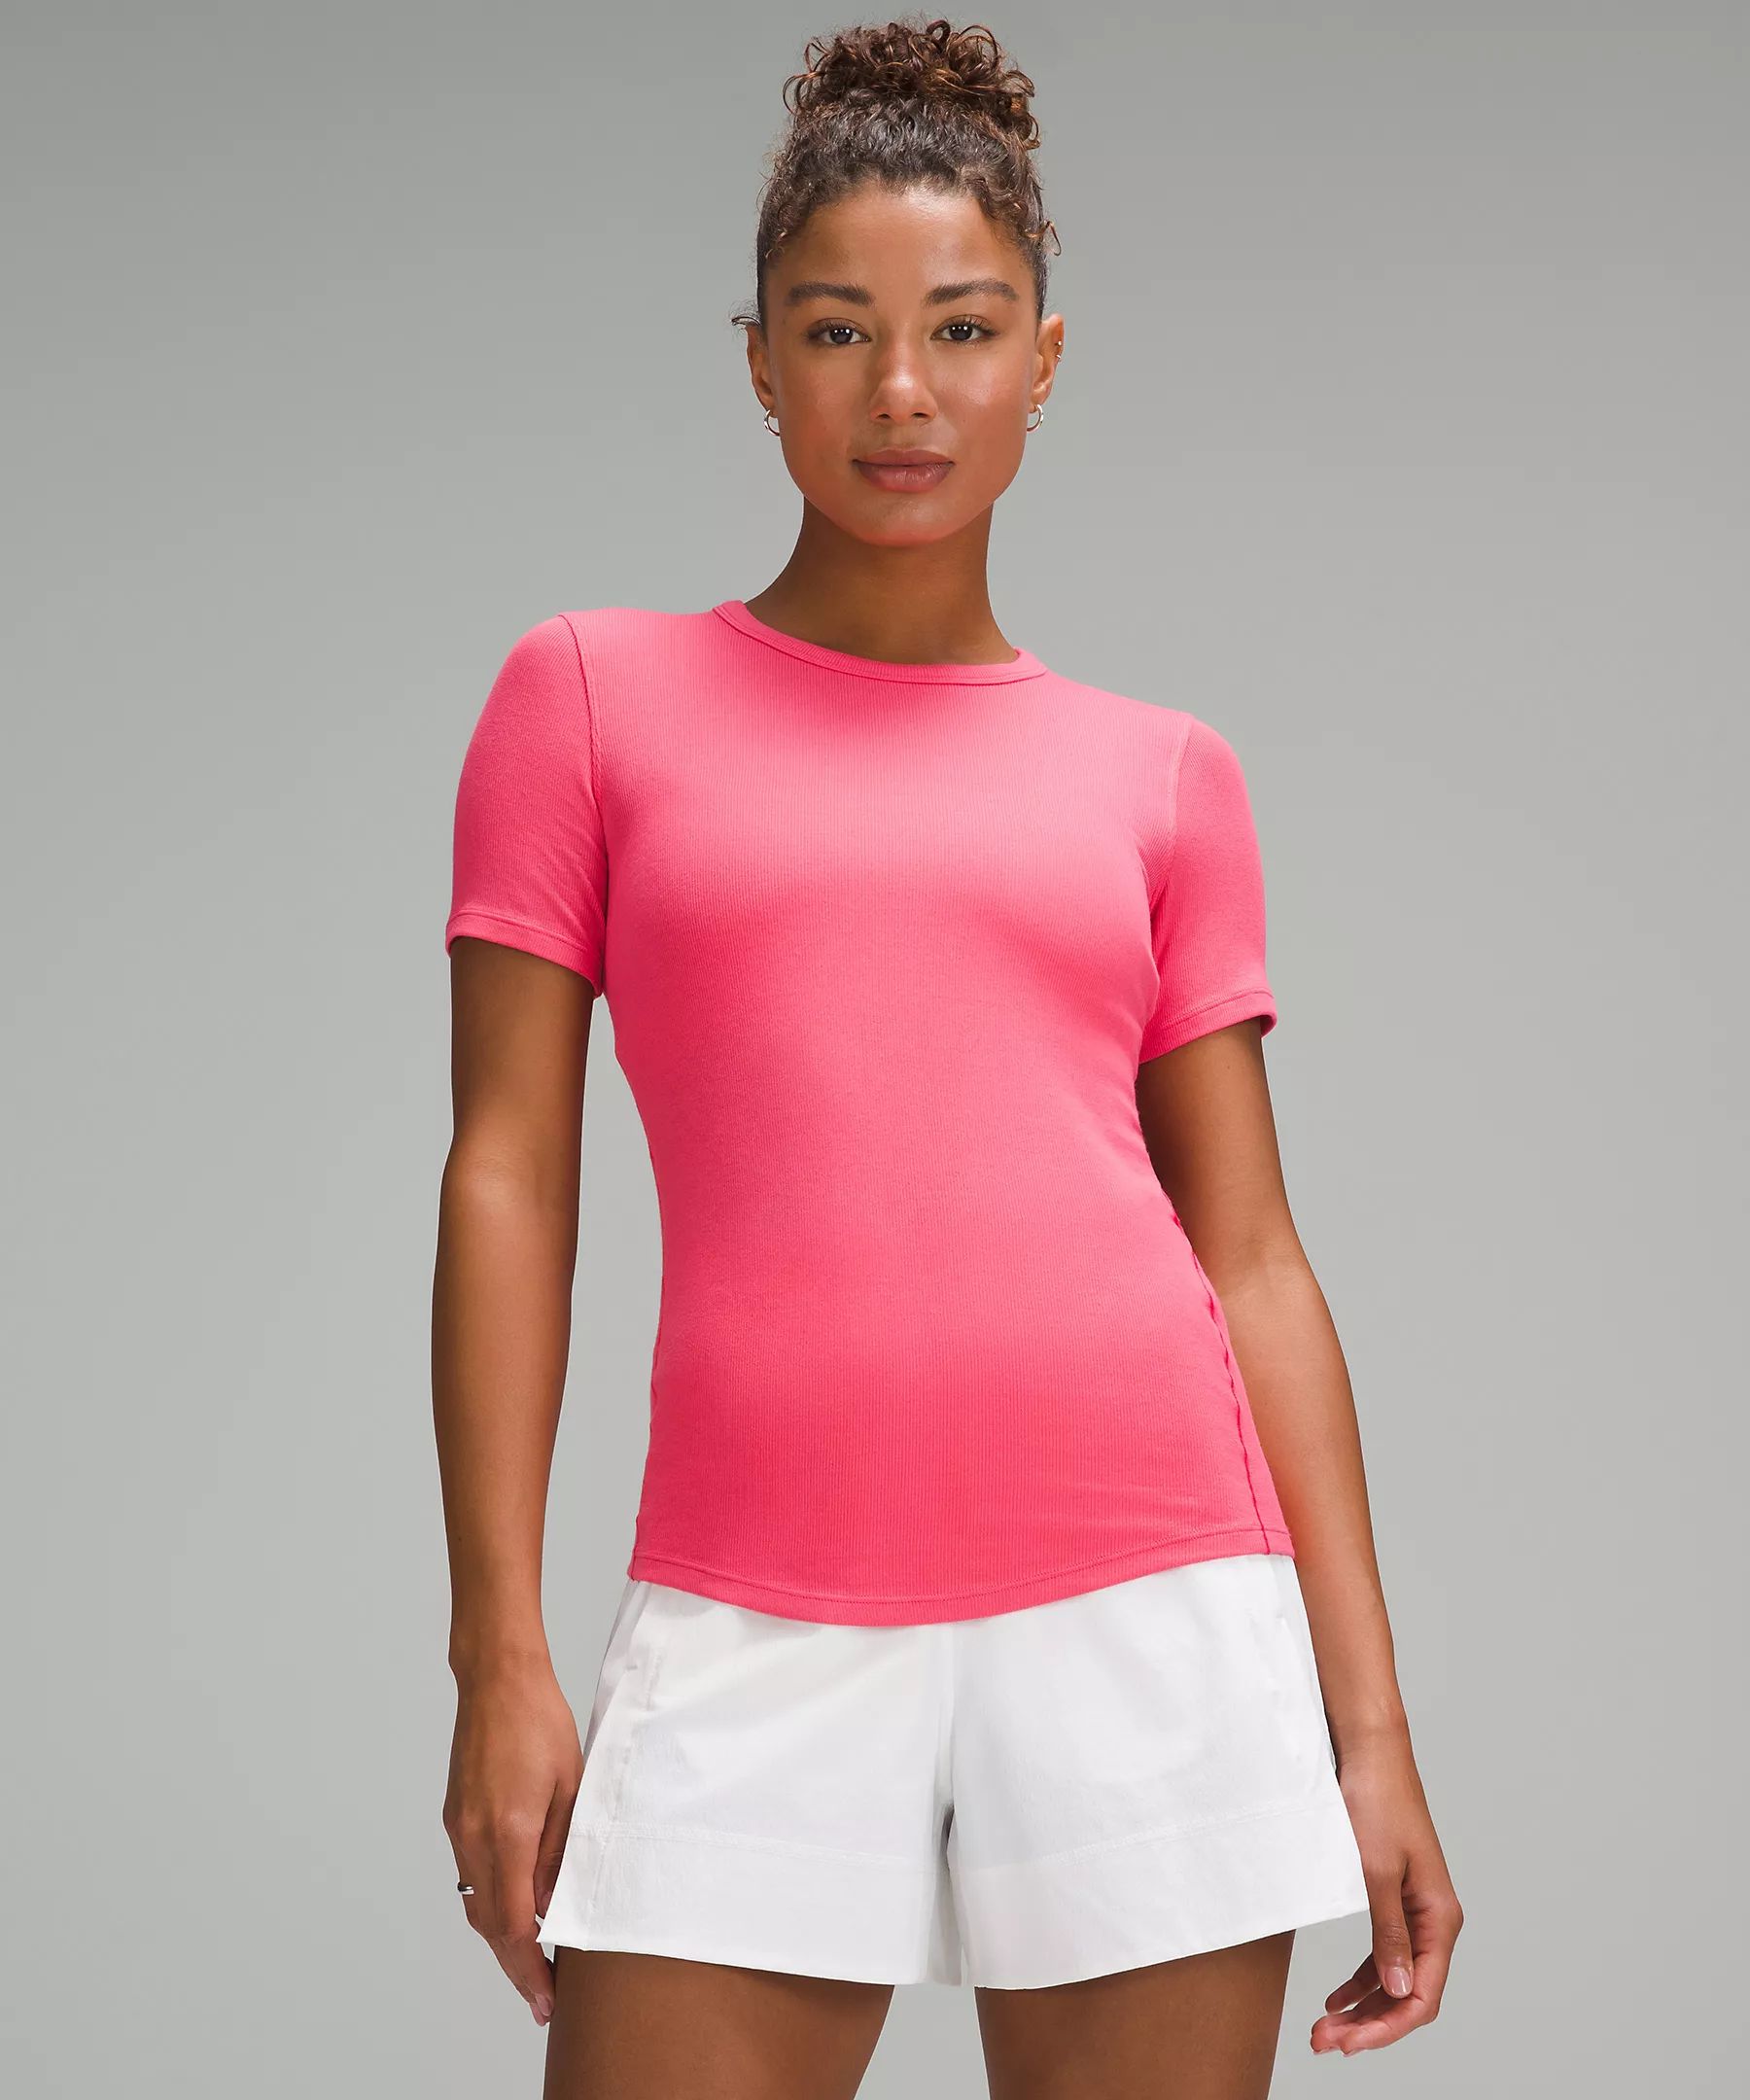 Hold Tight Short-Sleeve Shirt | Women's Short Sleeve Shirts & Tee's | lululemon | Lululemon (US)